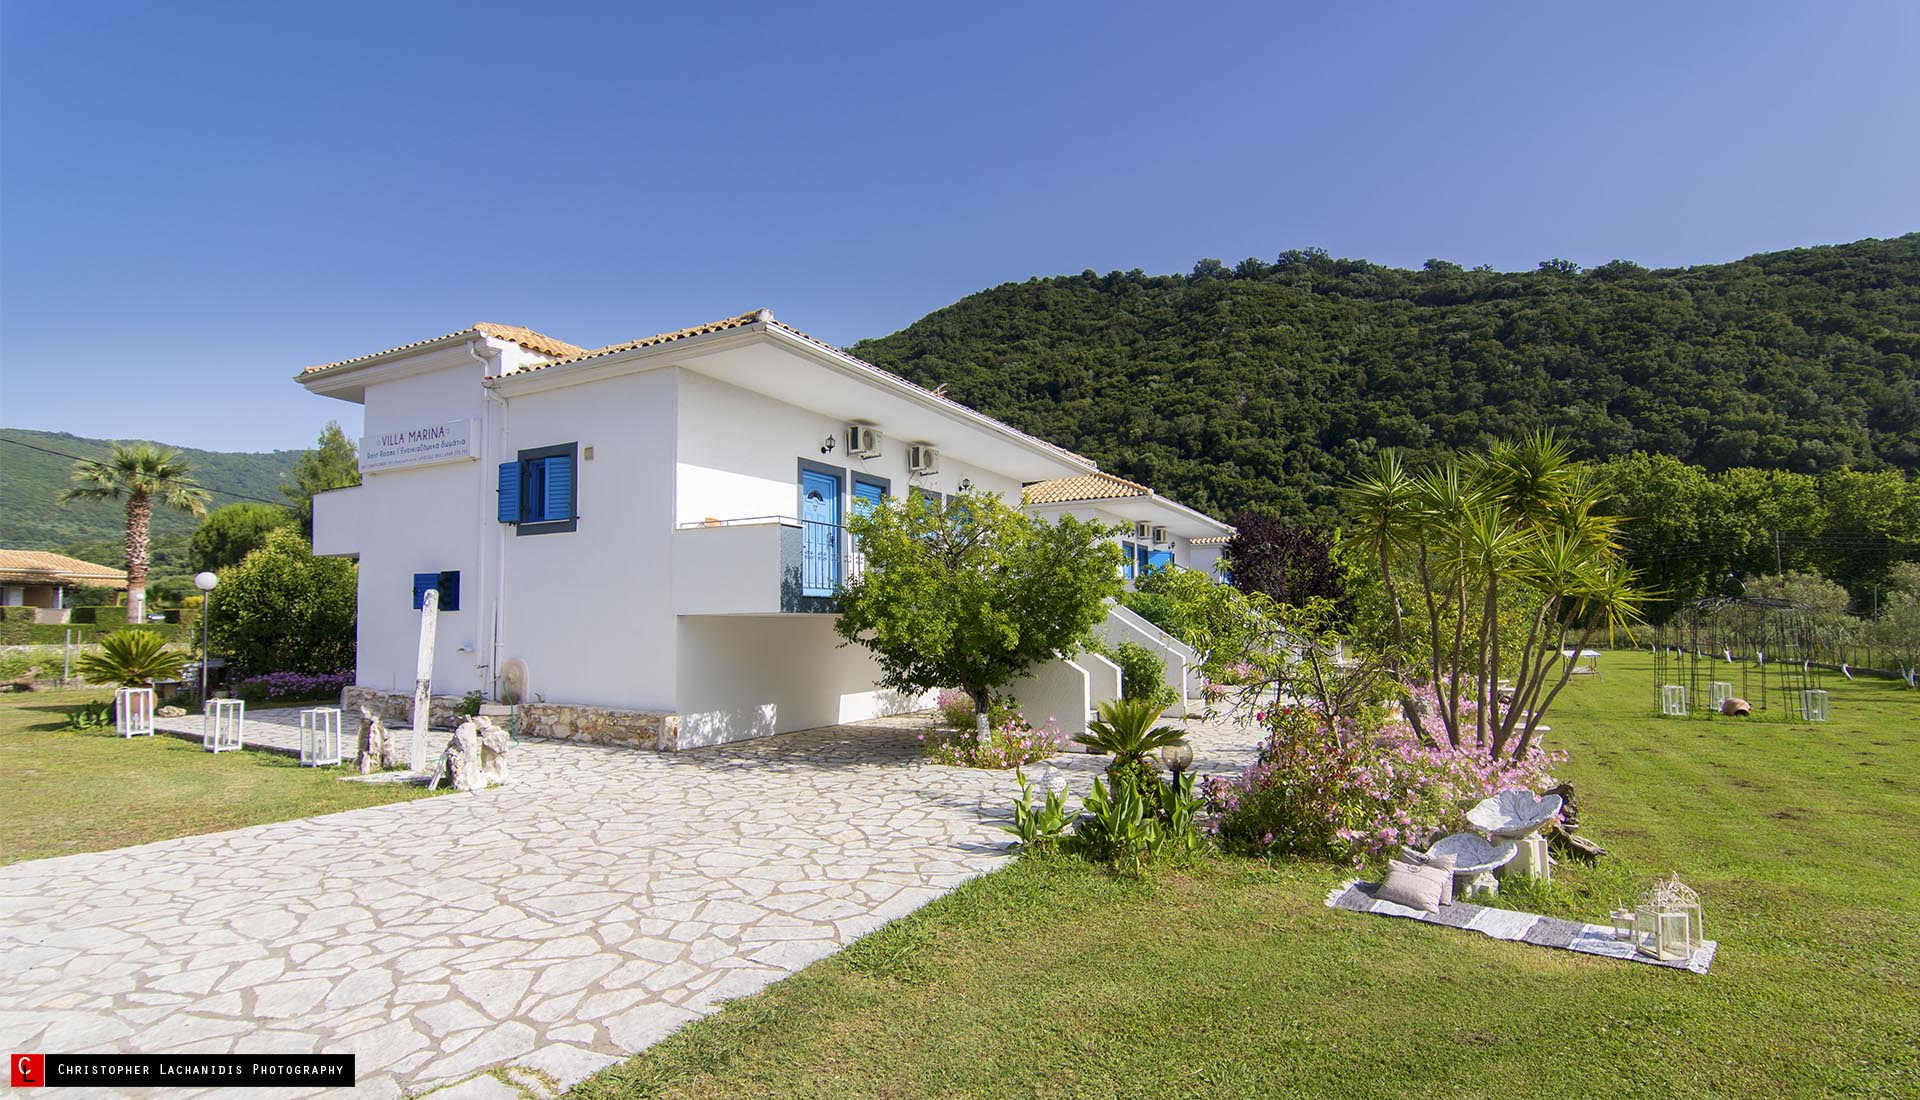 Villa Marina Apartments for rent Karavostasi beach Perdika Thesprotia Epirus Greece!